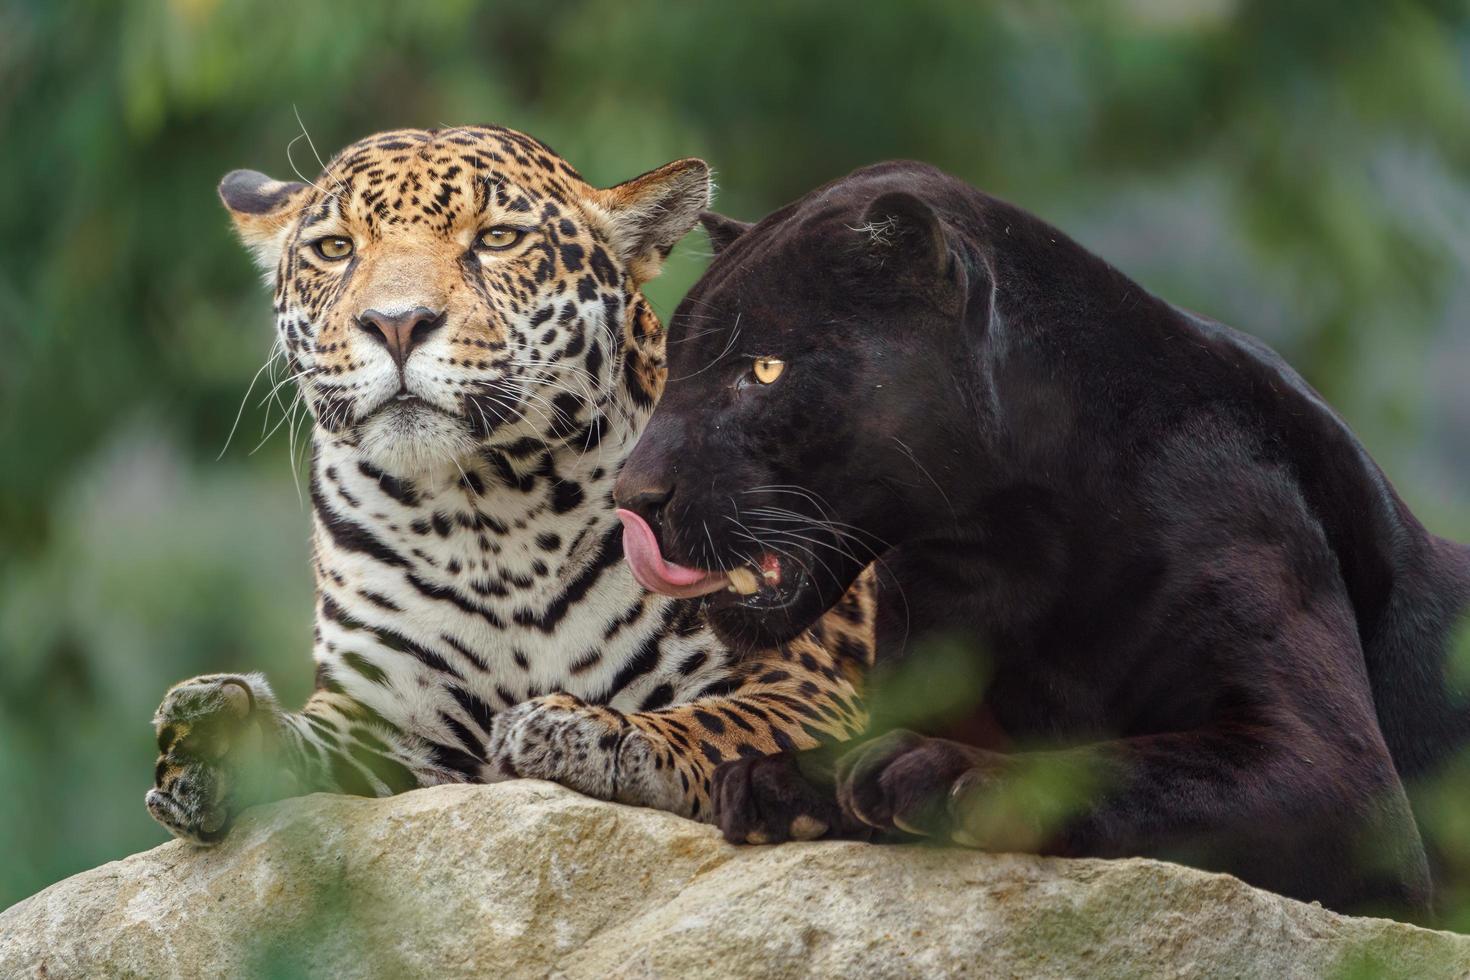 Portrait of Jaguar photo